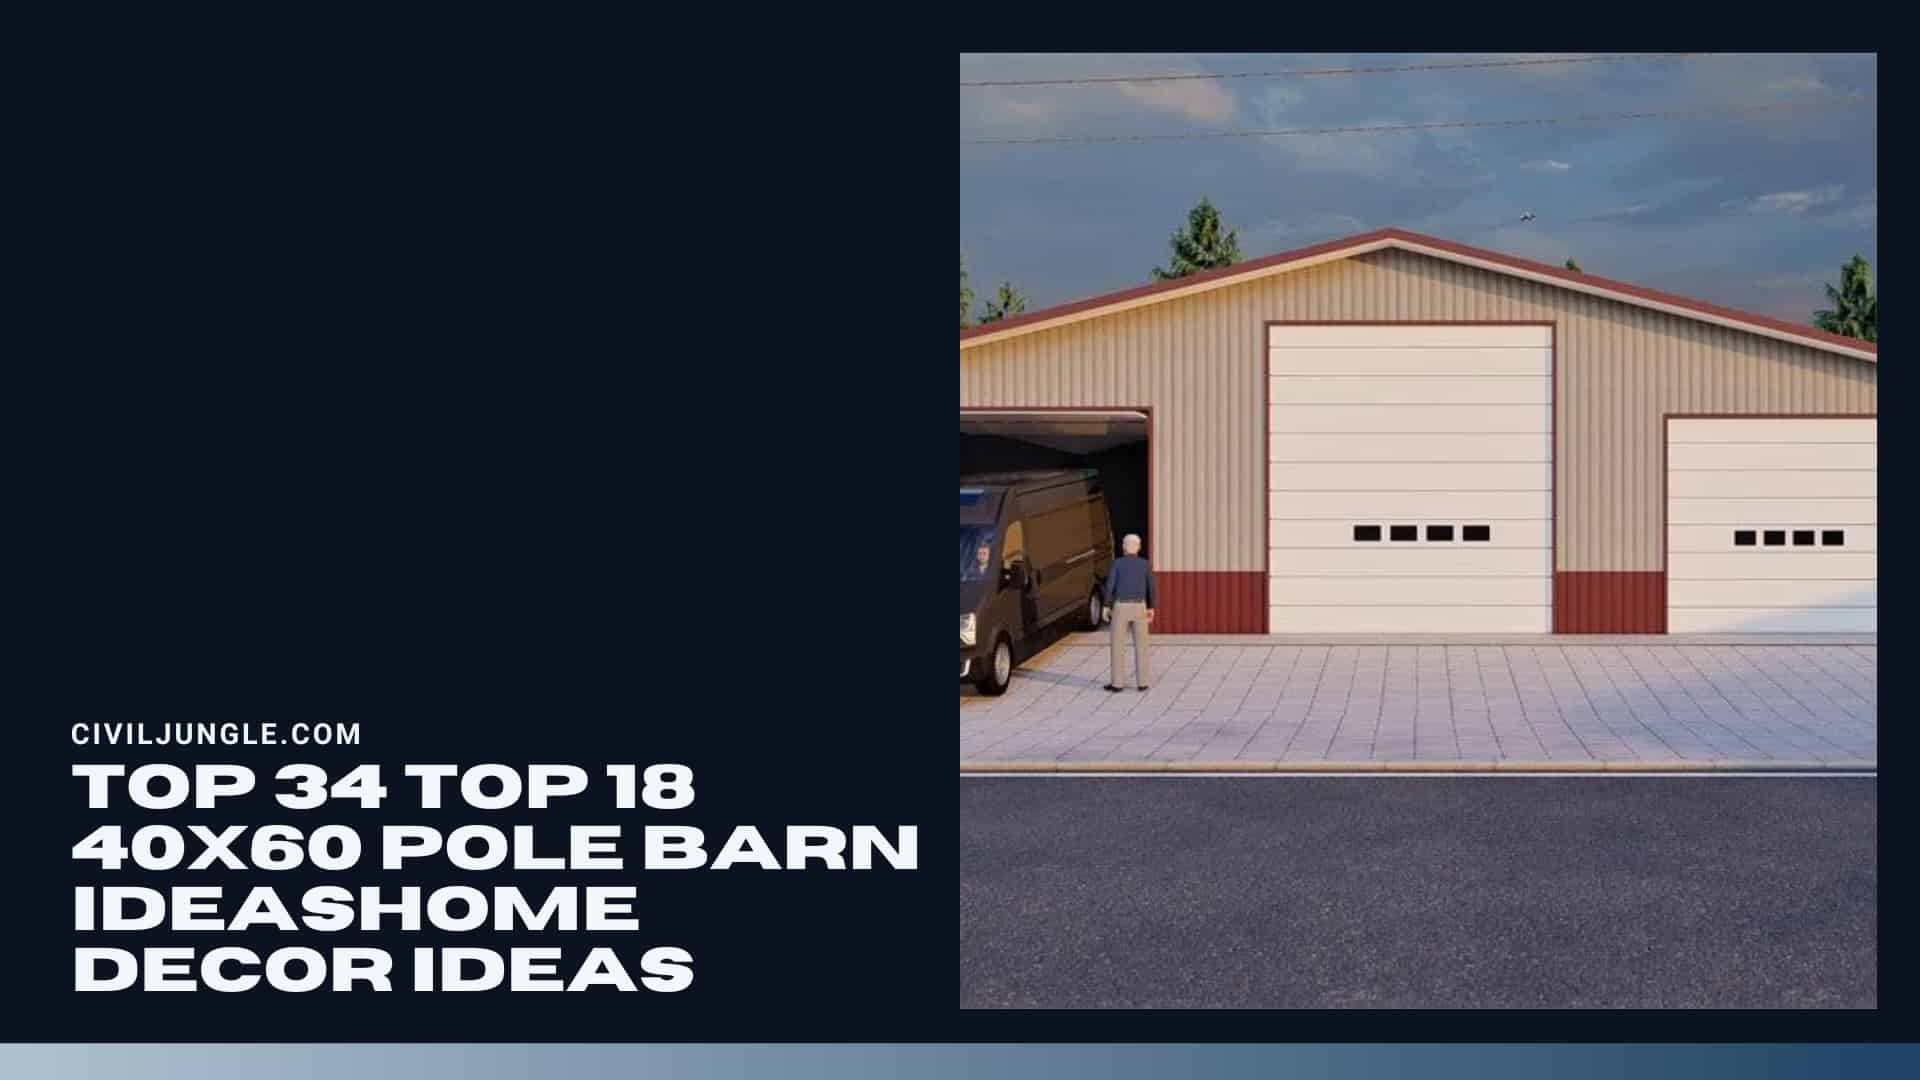 Top 18 40x60 Pole Barn Ideas